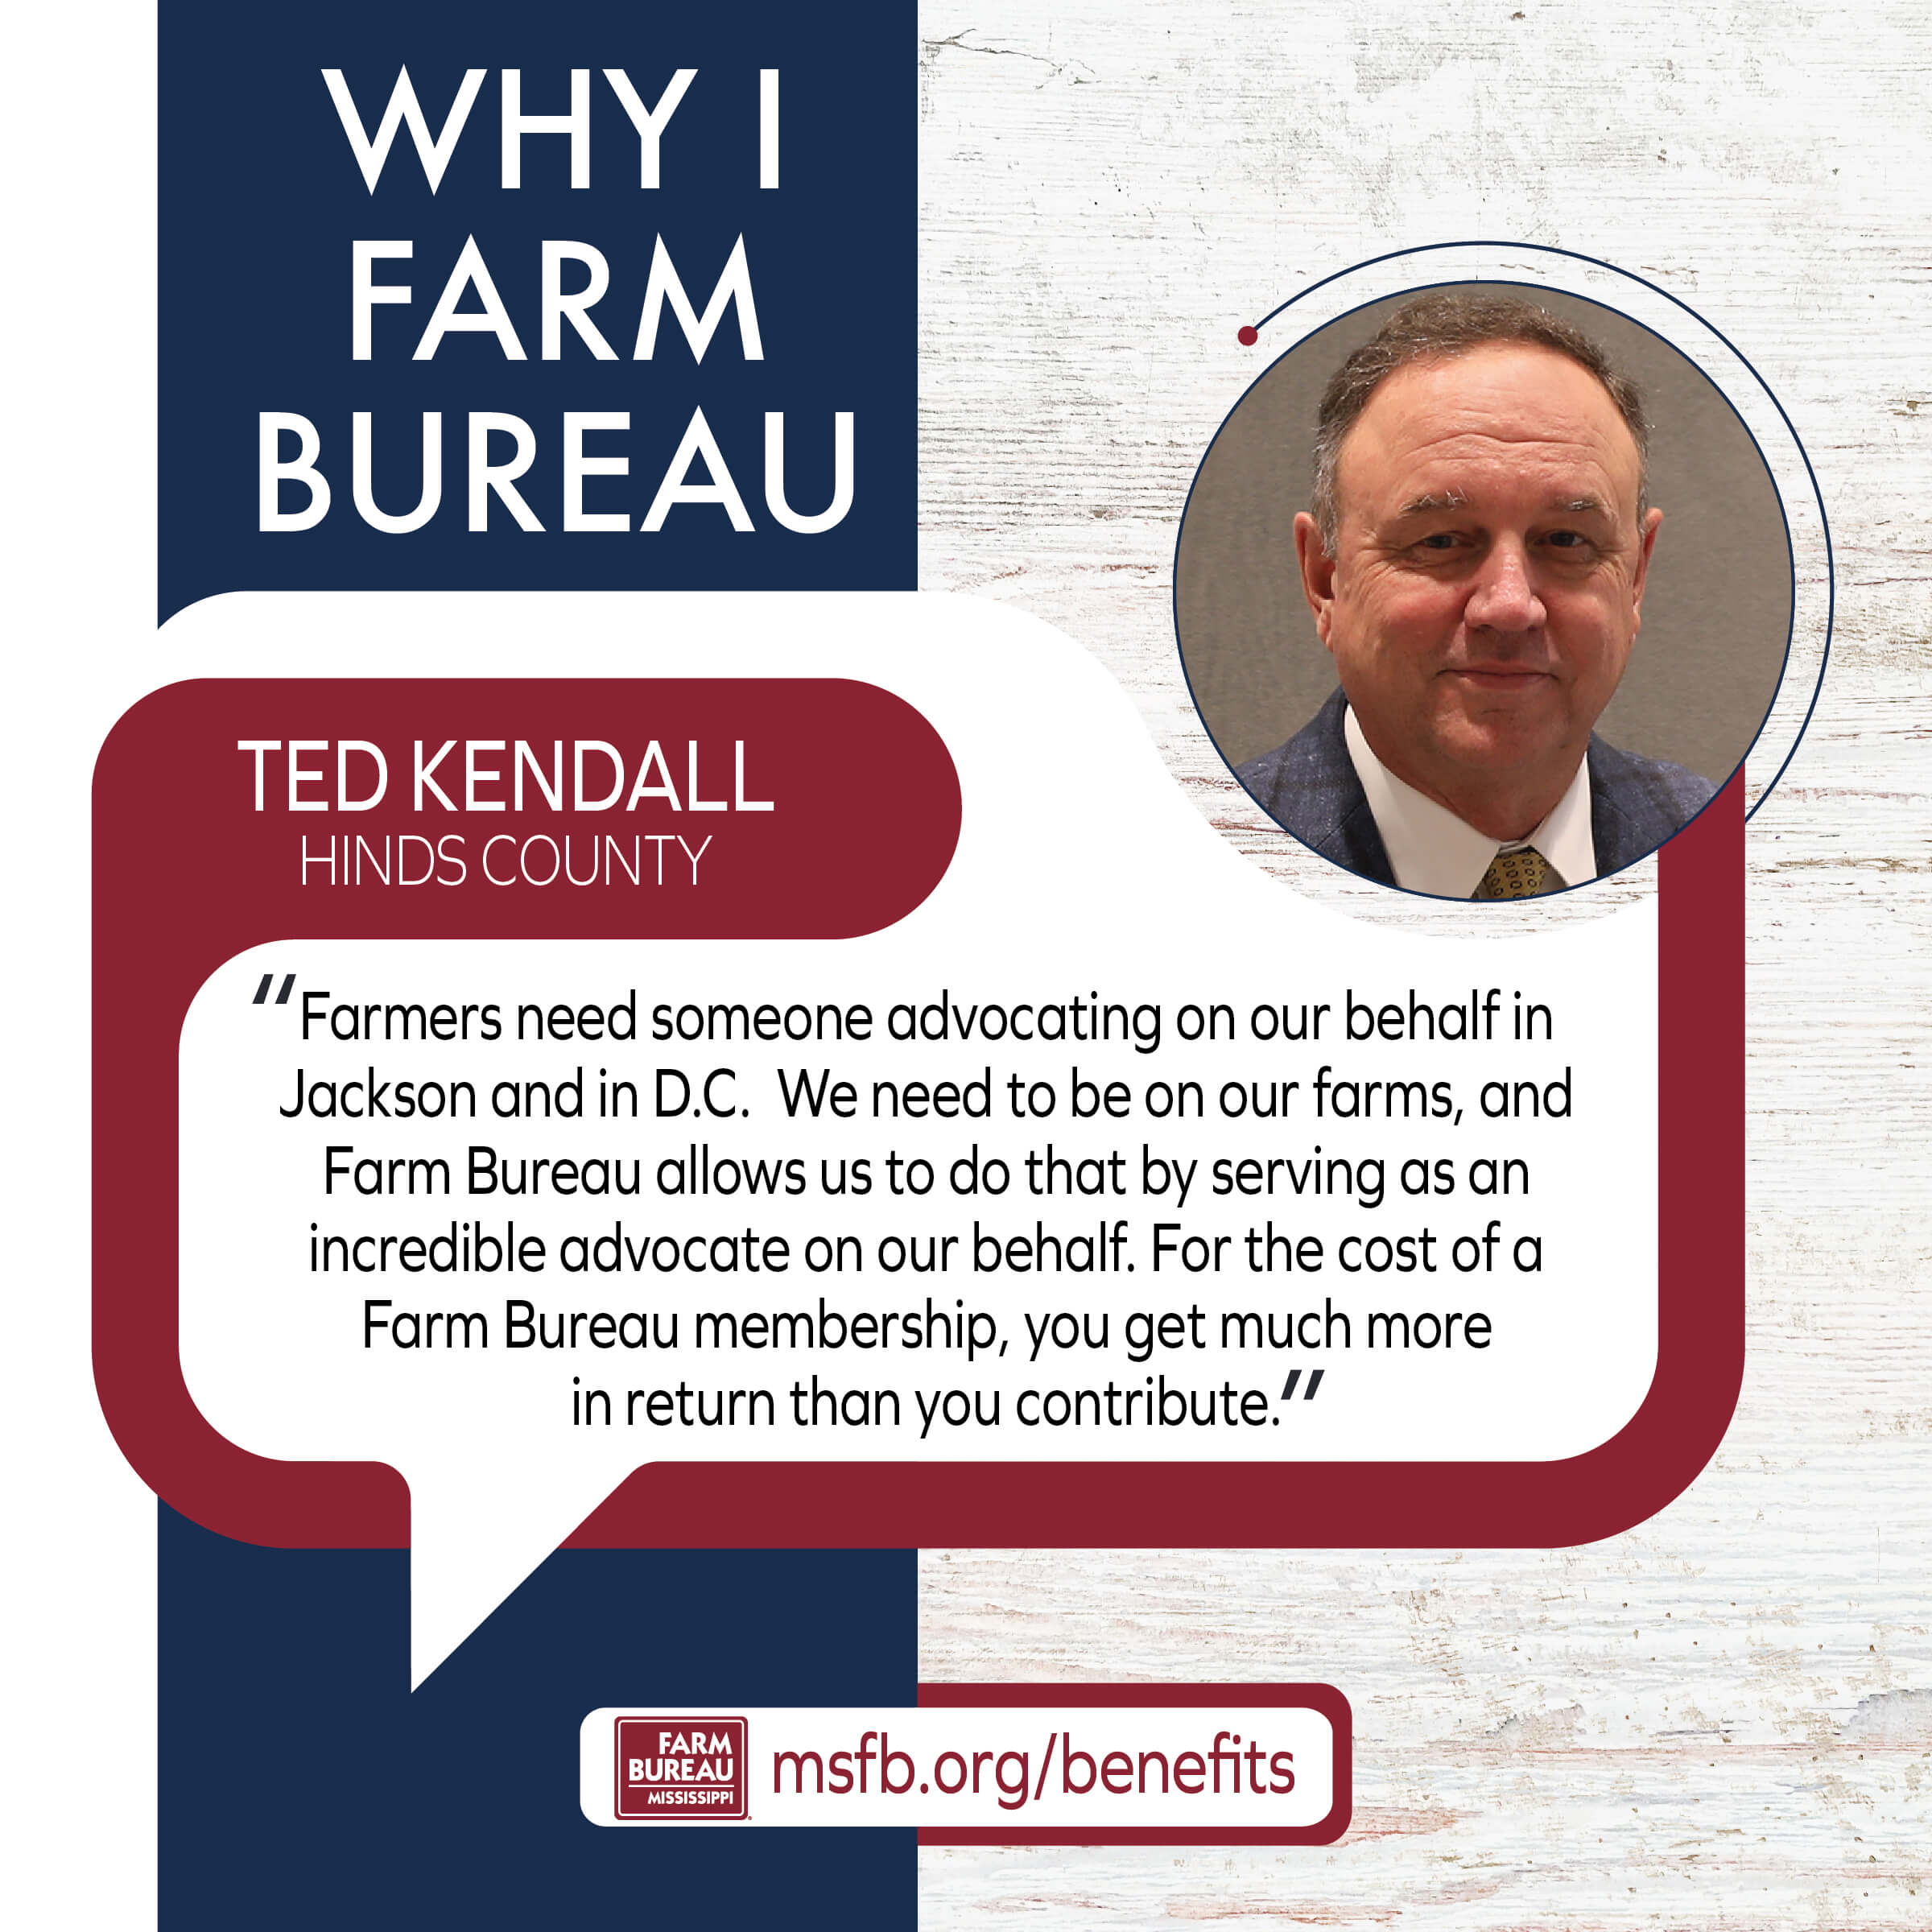 Why I Farm Bureau